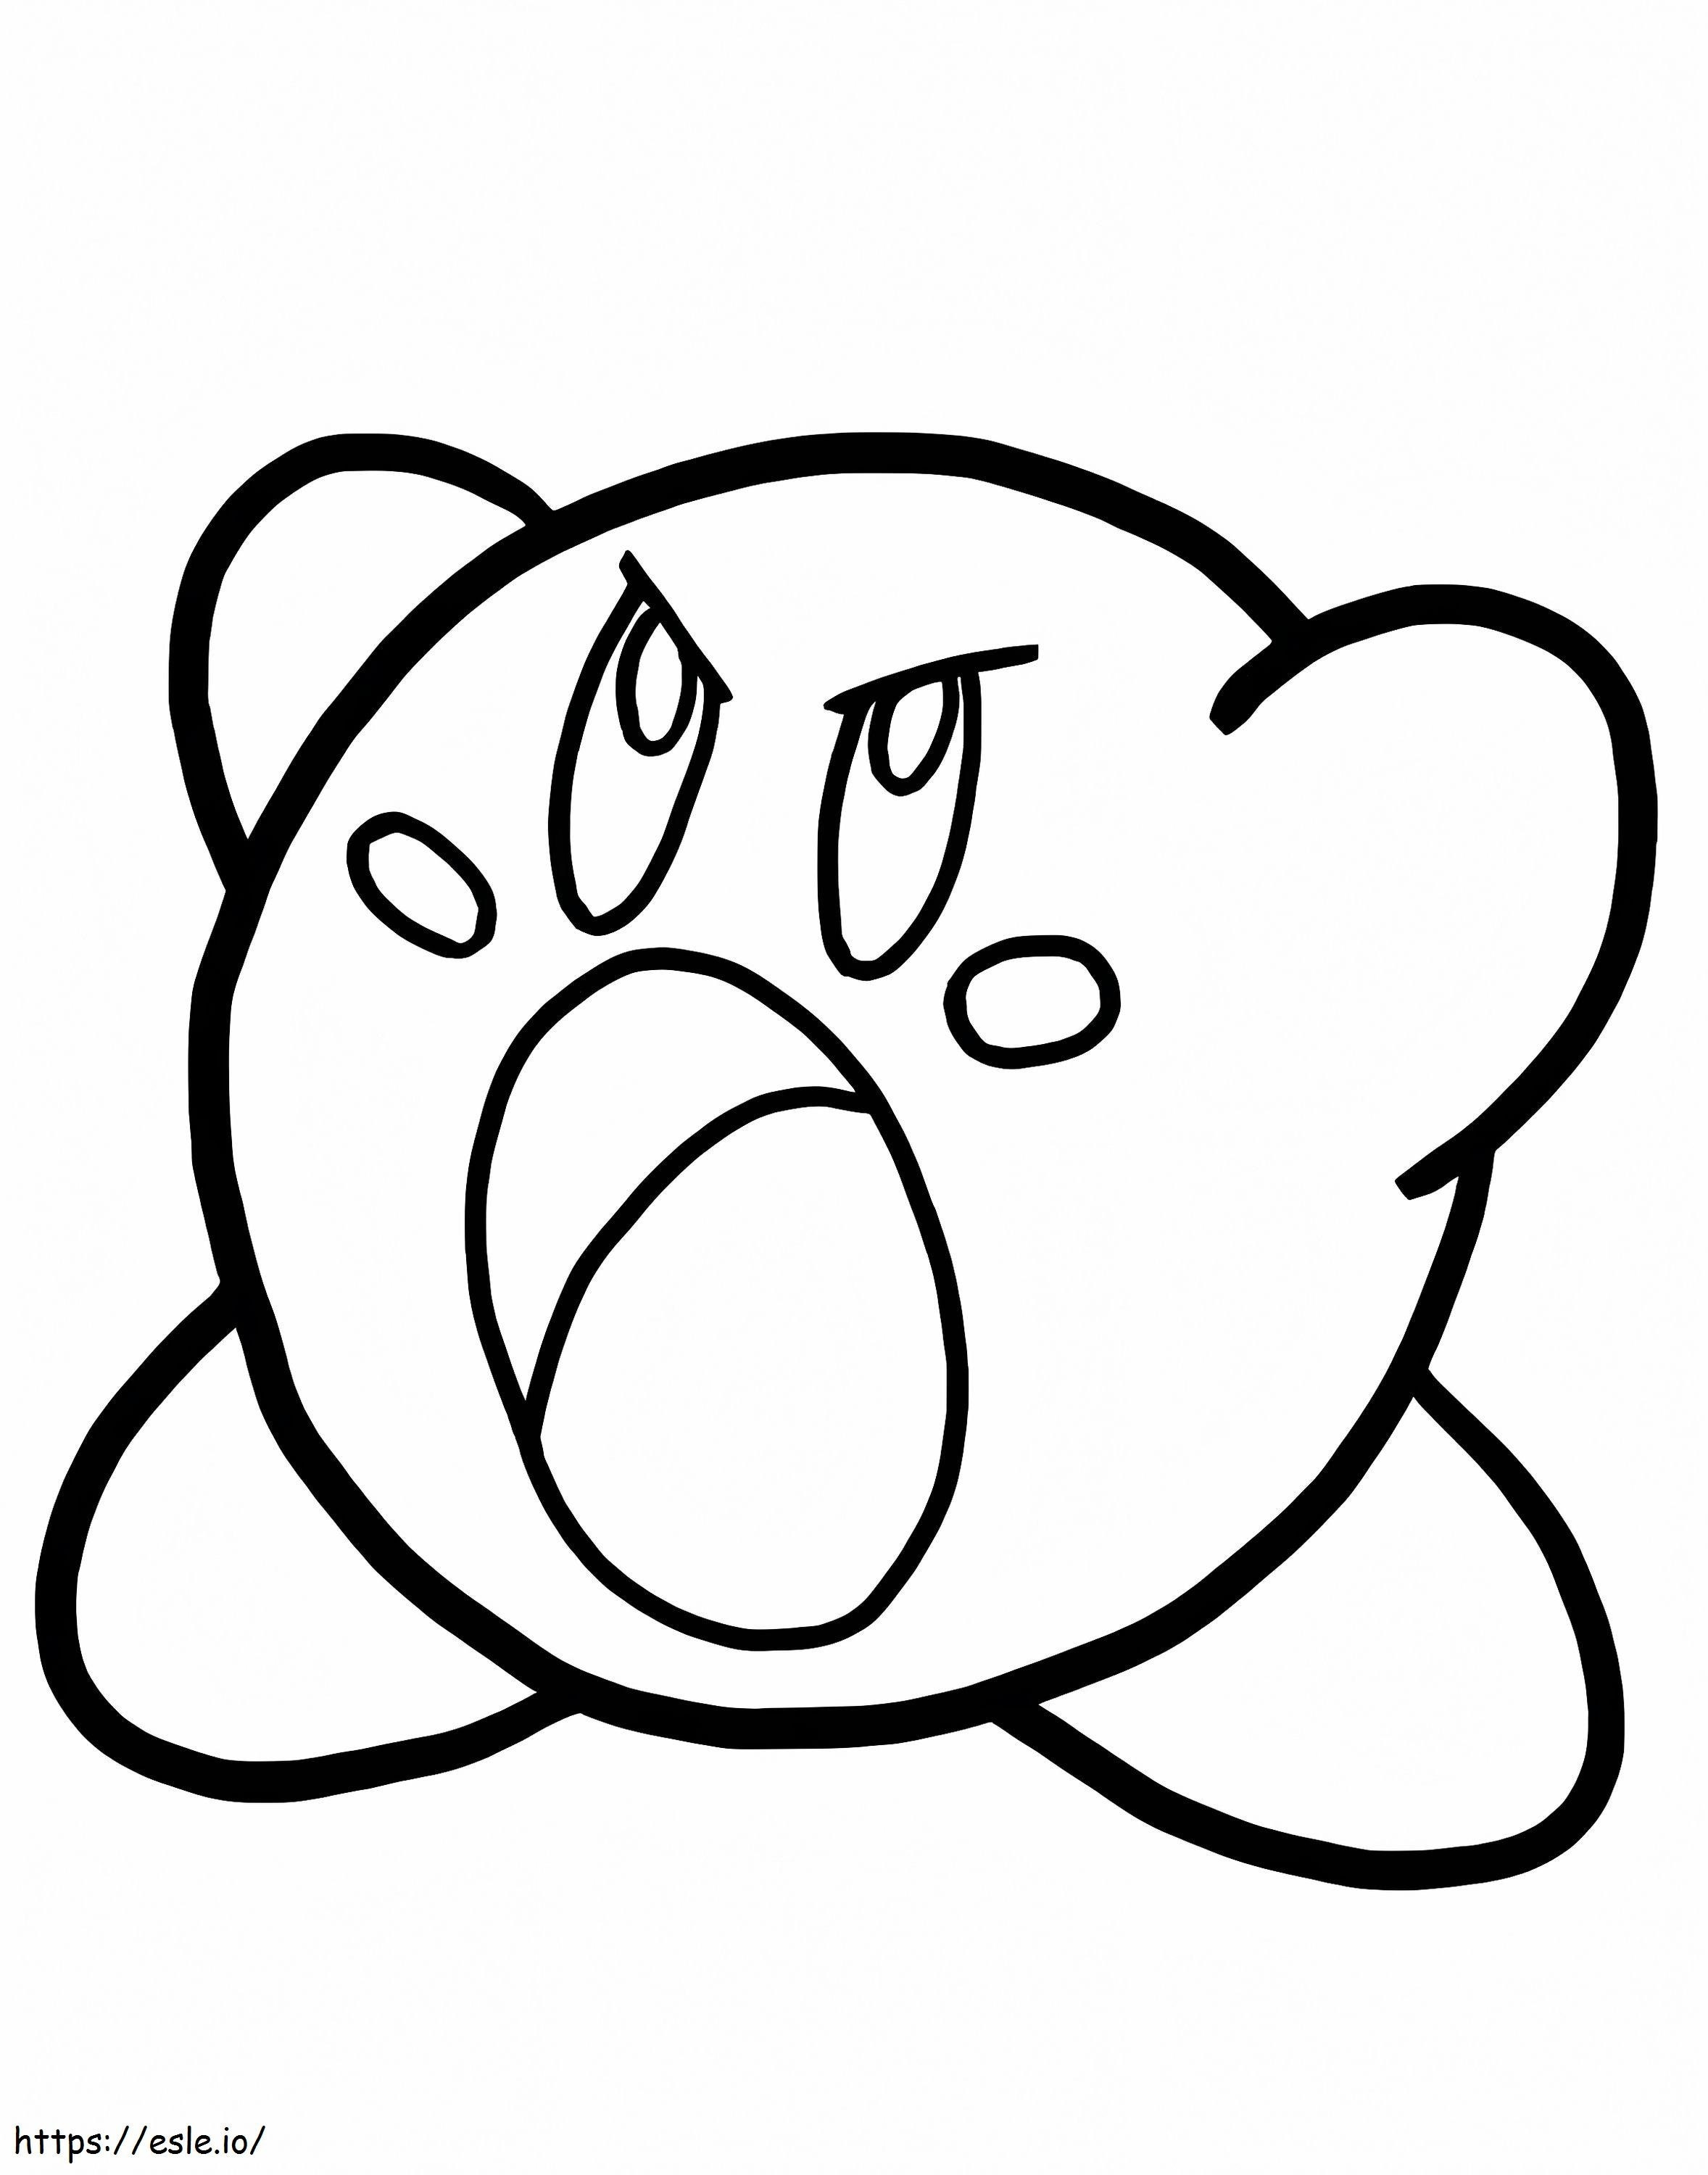 Wütender Kirby ausmalbilder